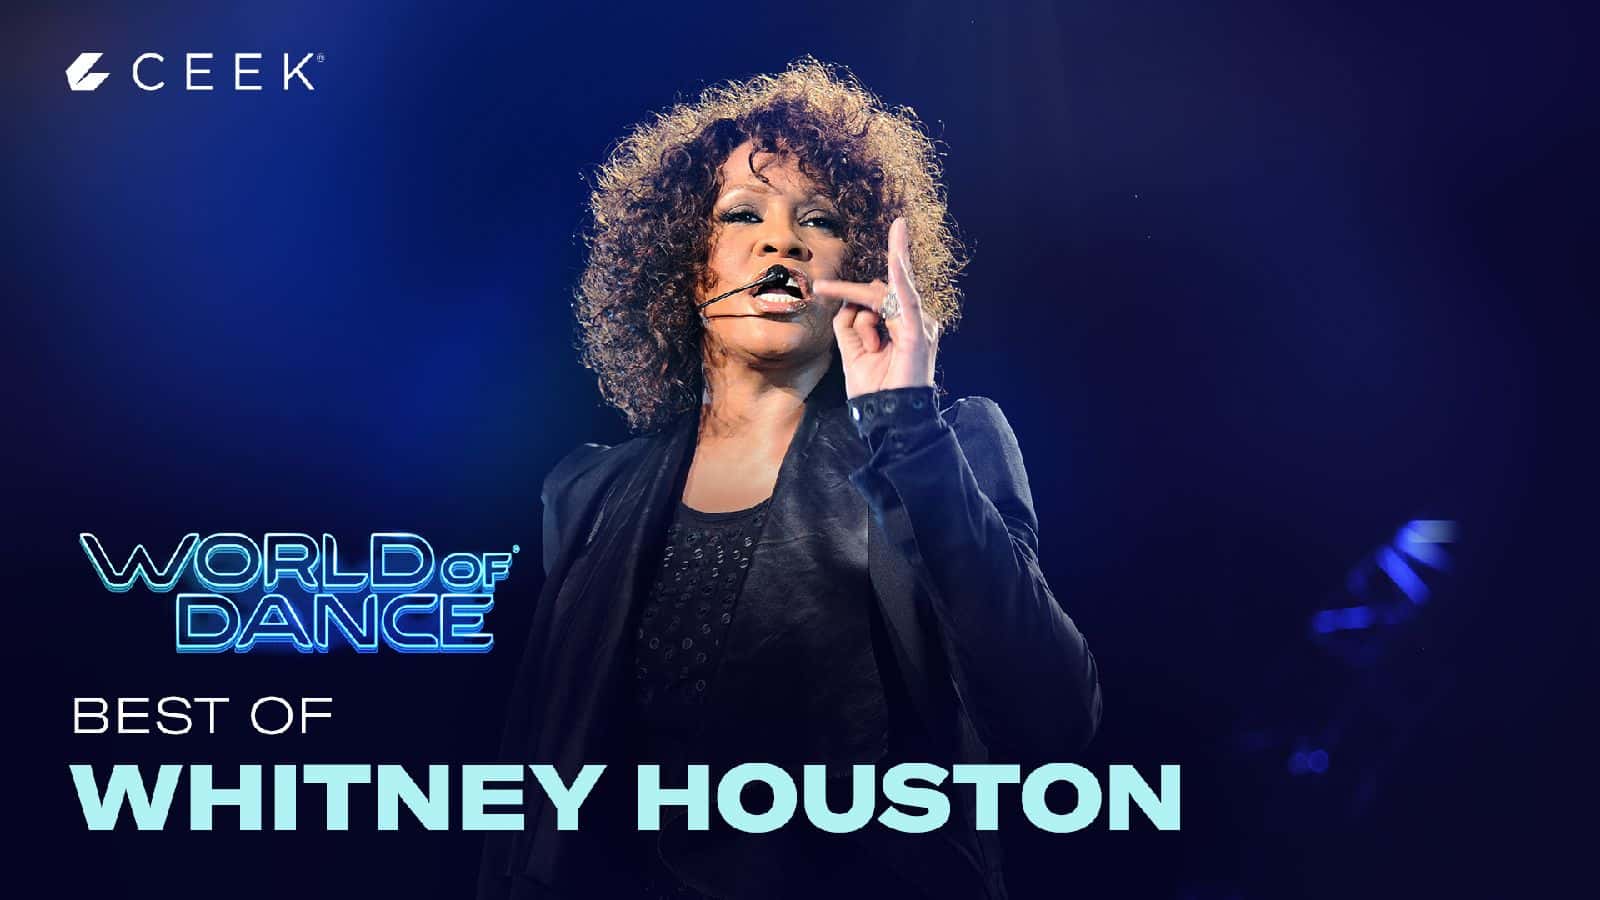 World Music Awards, Whitney Houston  Whitney Houston Performs I Will Always Love You At World Music Awards